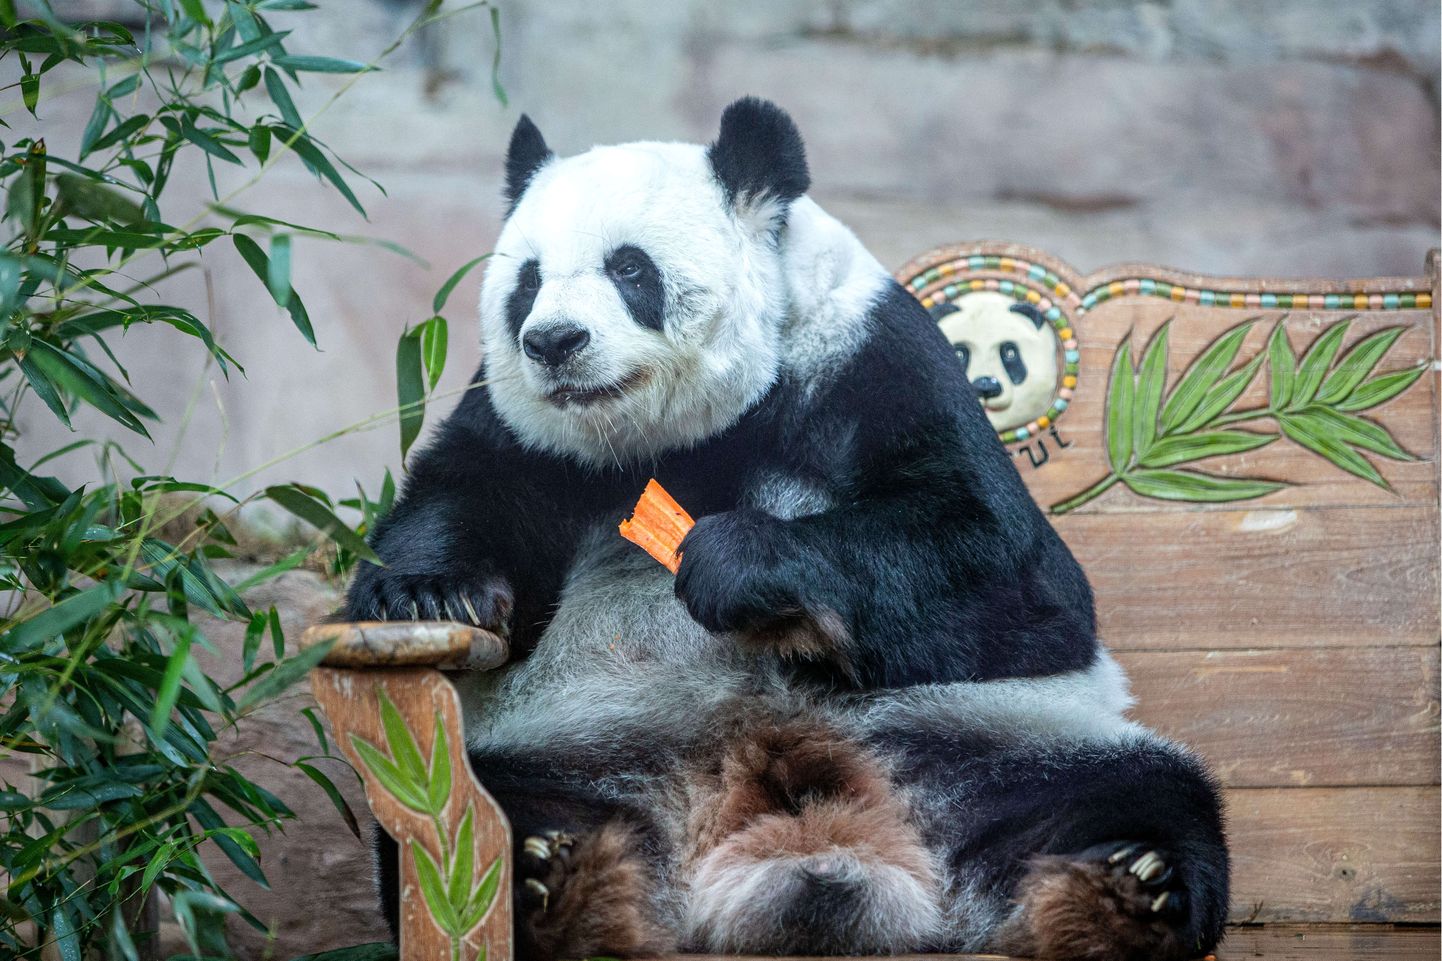 Hiidpanda Lin Hui nosimas. Hiina andis 2003. aastal toona kaheaastase pandapõngerja laenuks Tai Chiang Mai loomaaiale. Pilt on illustratiivne.